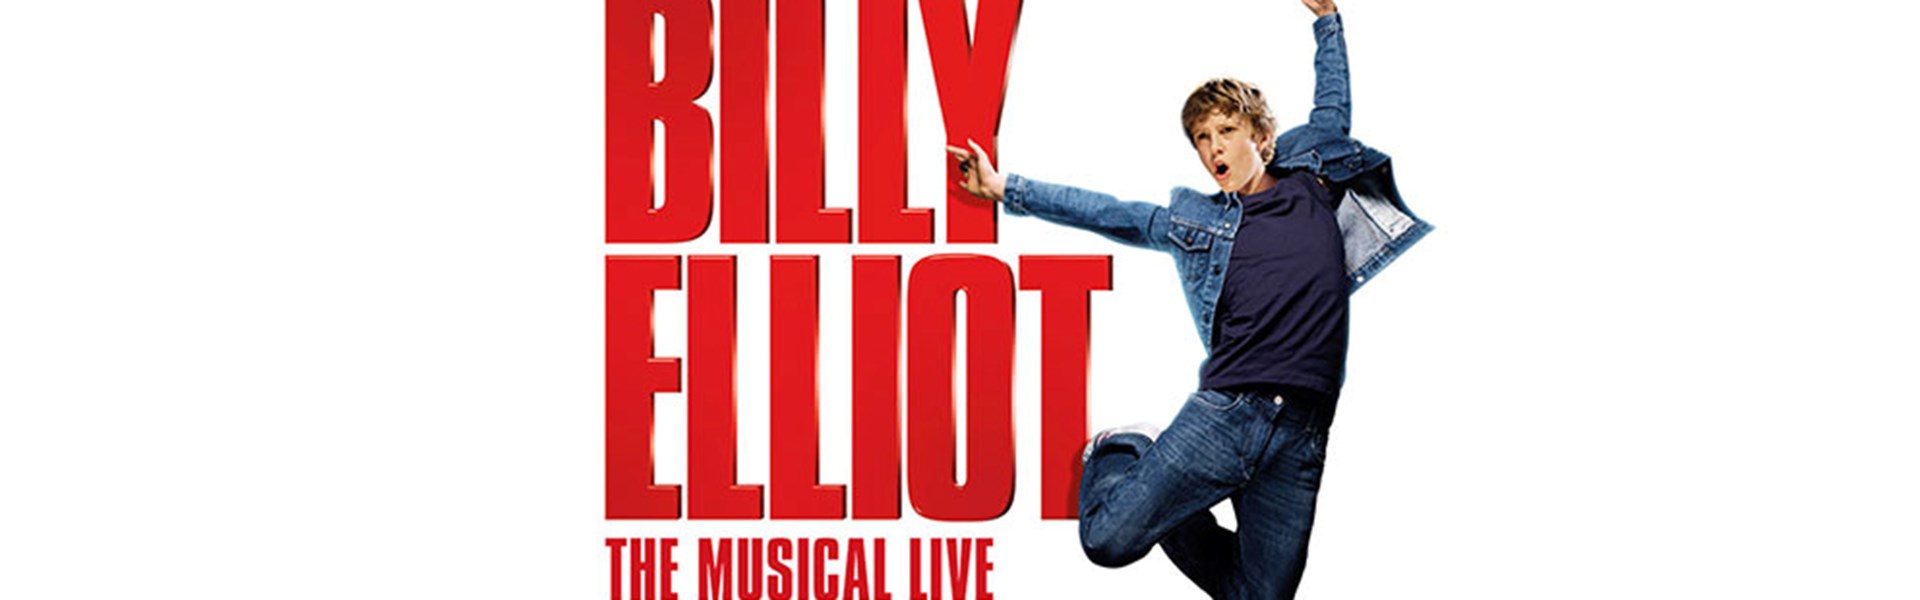 FILM: Billy Elliot The Musical (15)